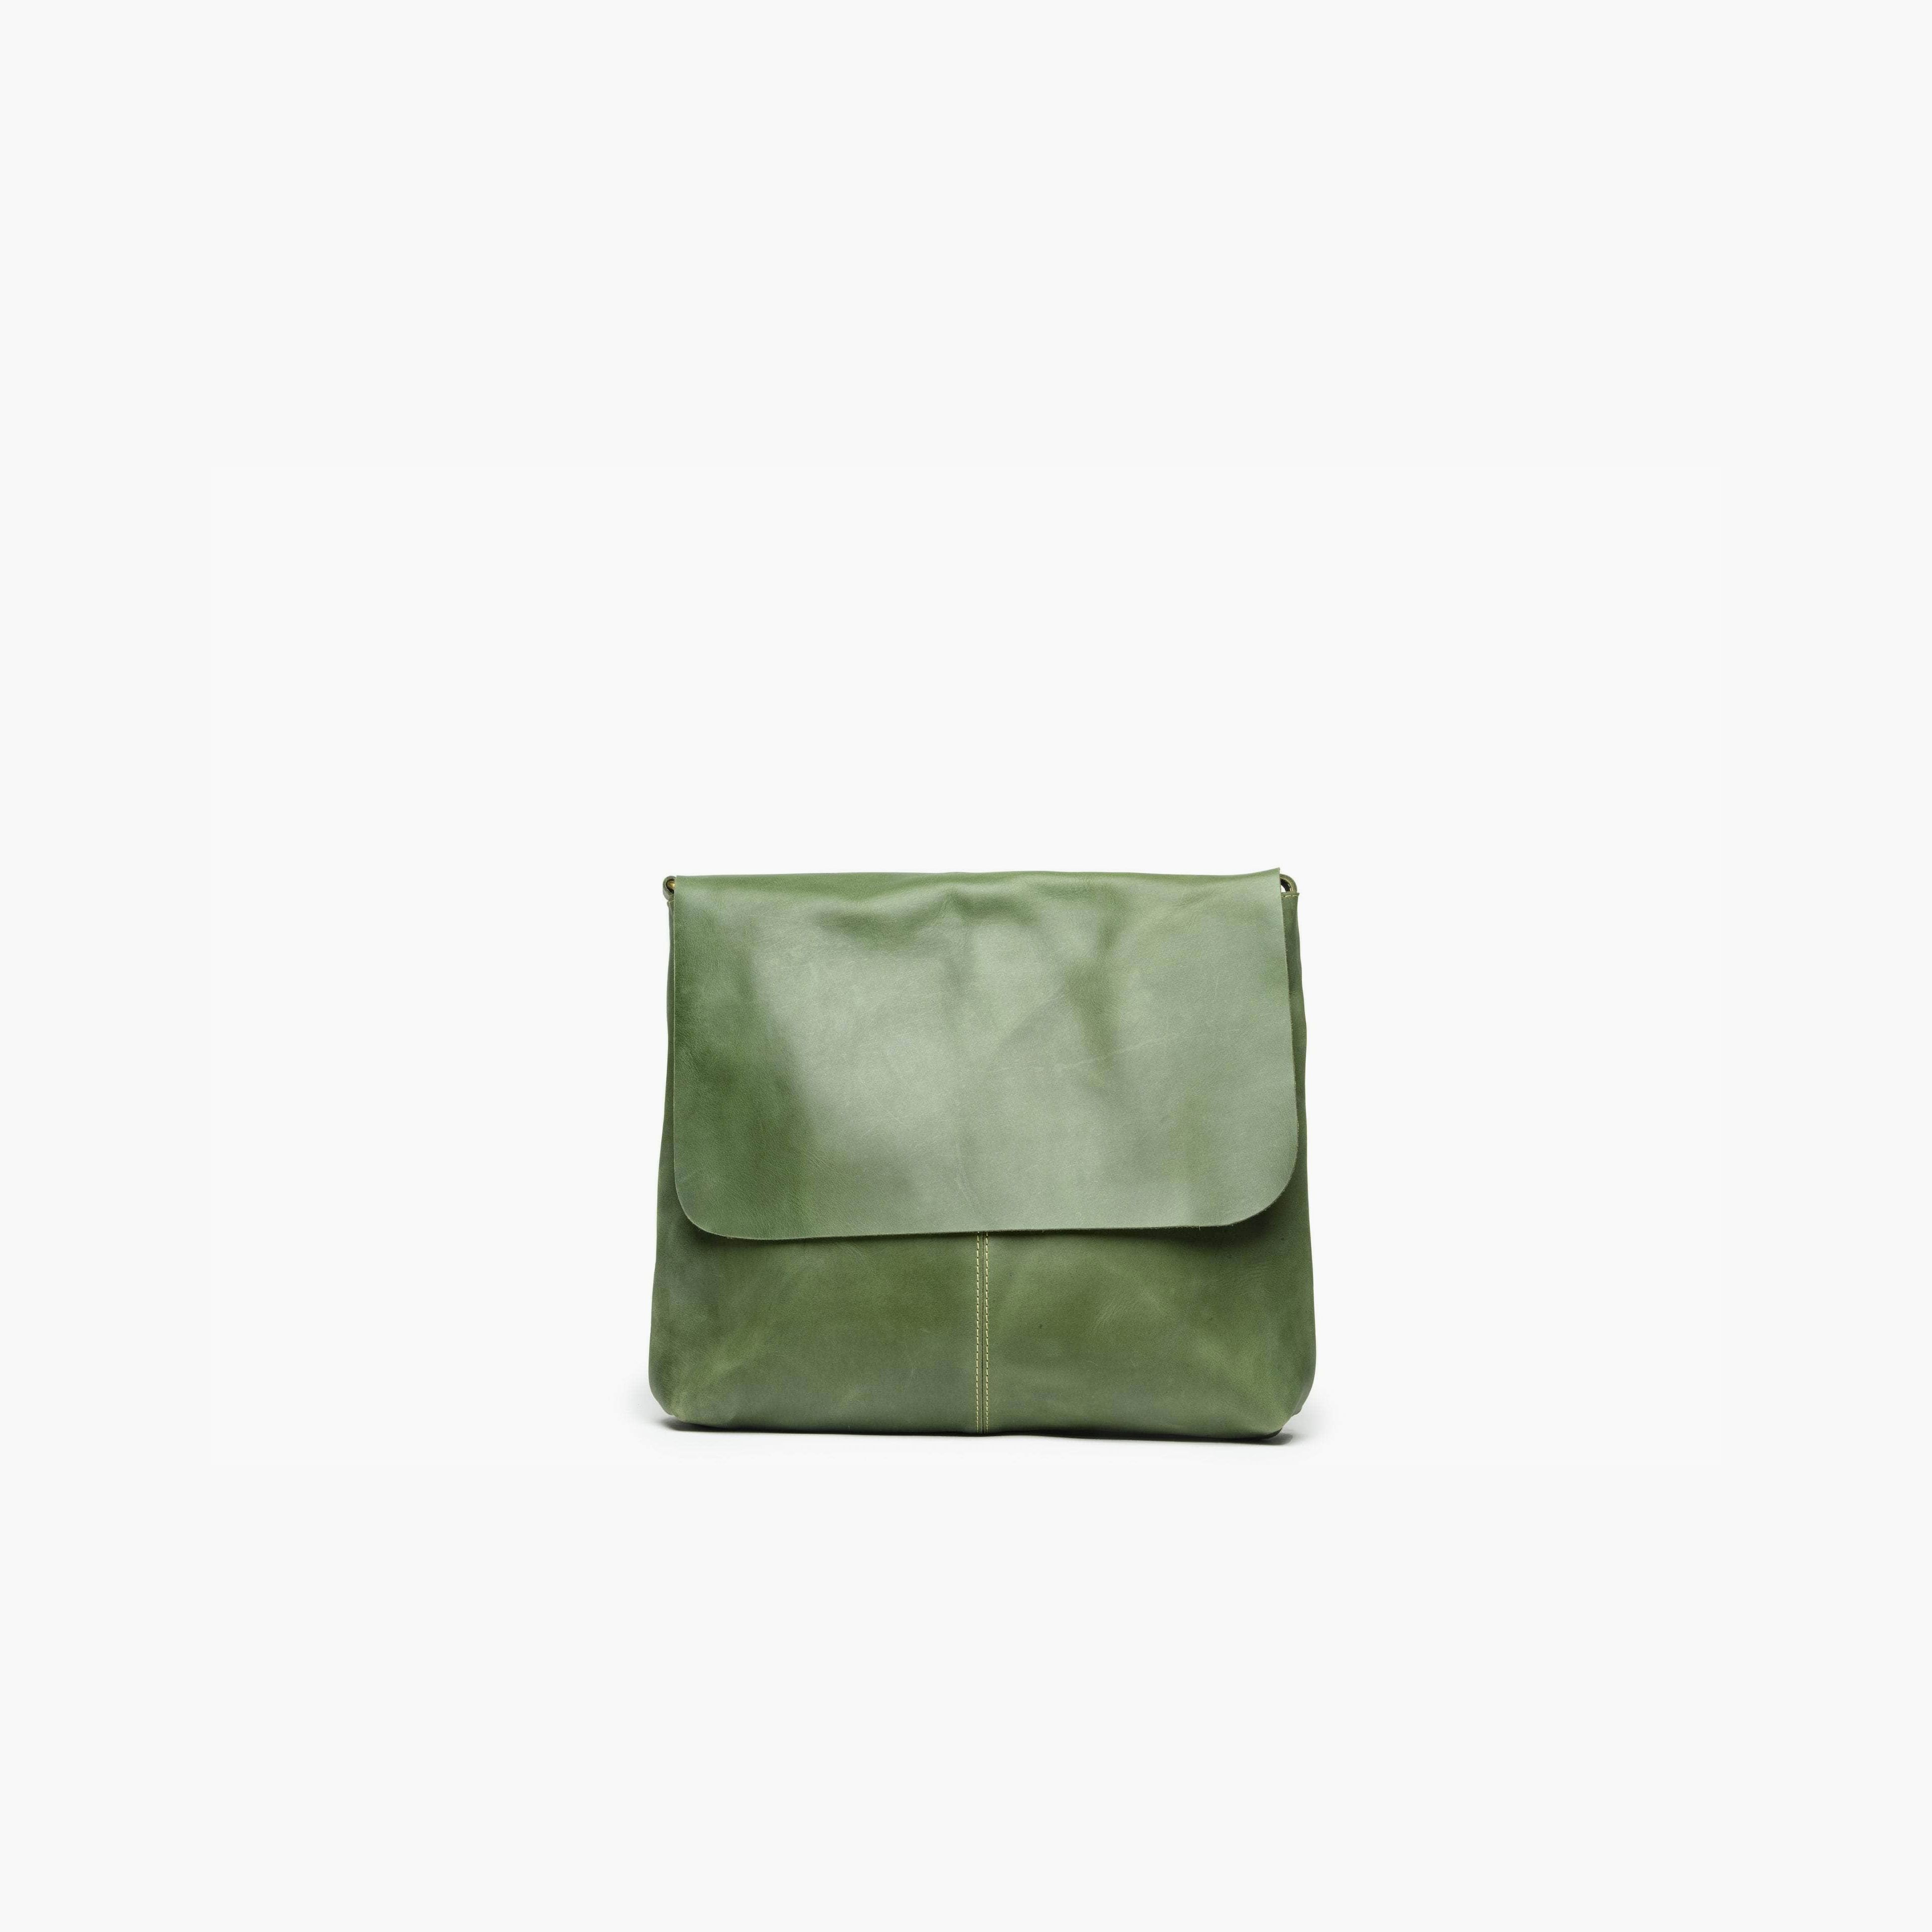 Telak Leather Messenger Bag - Forest Green